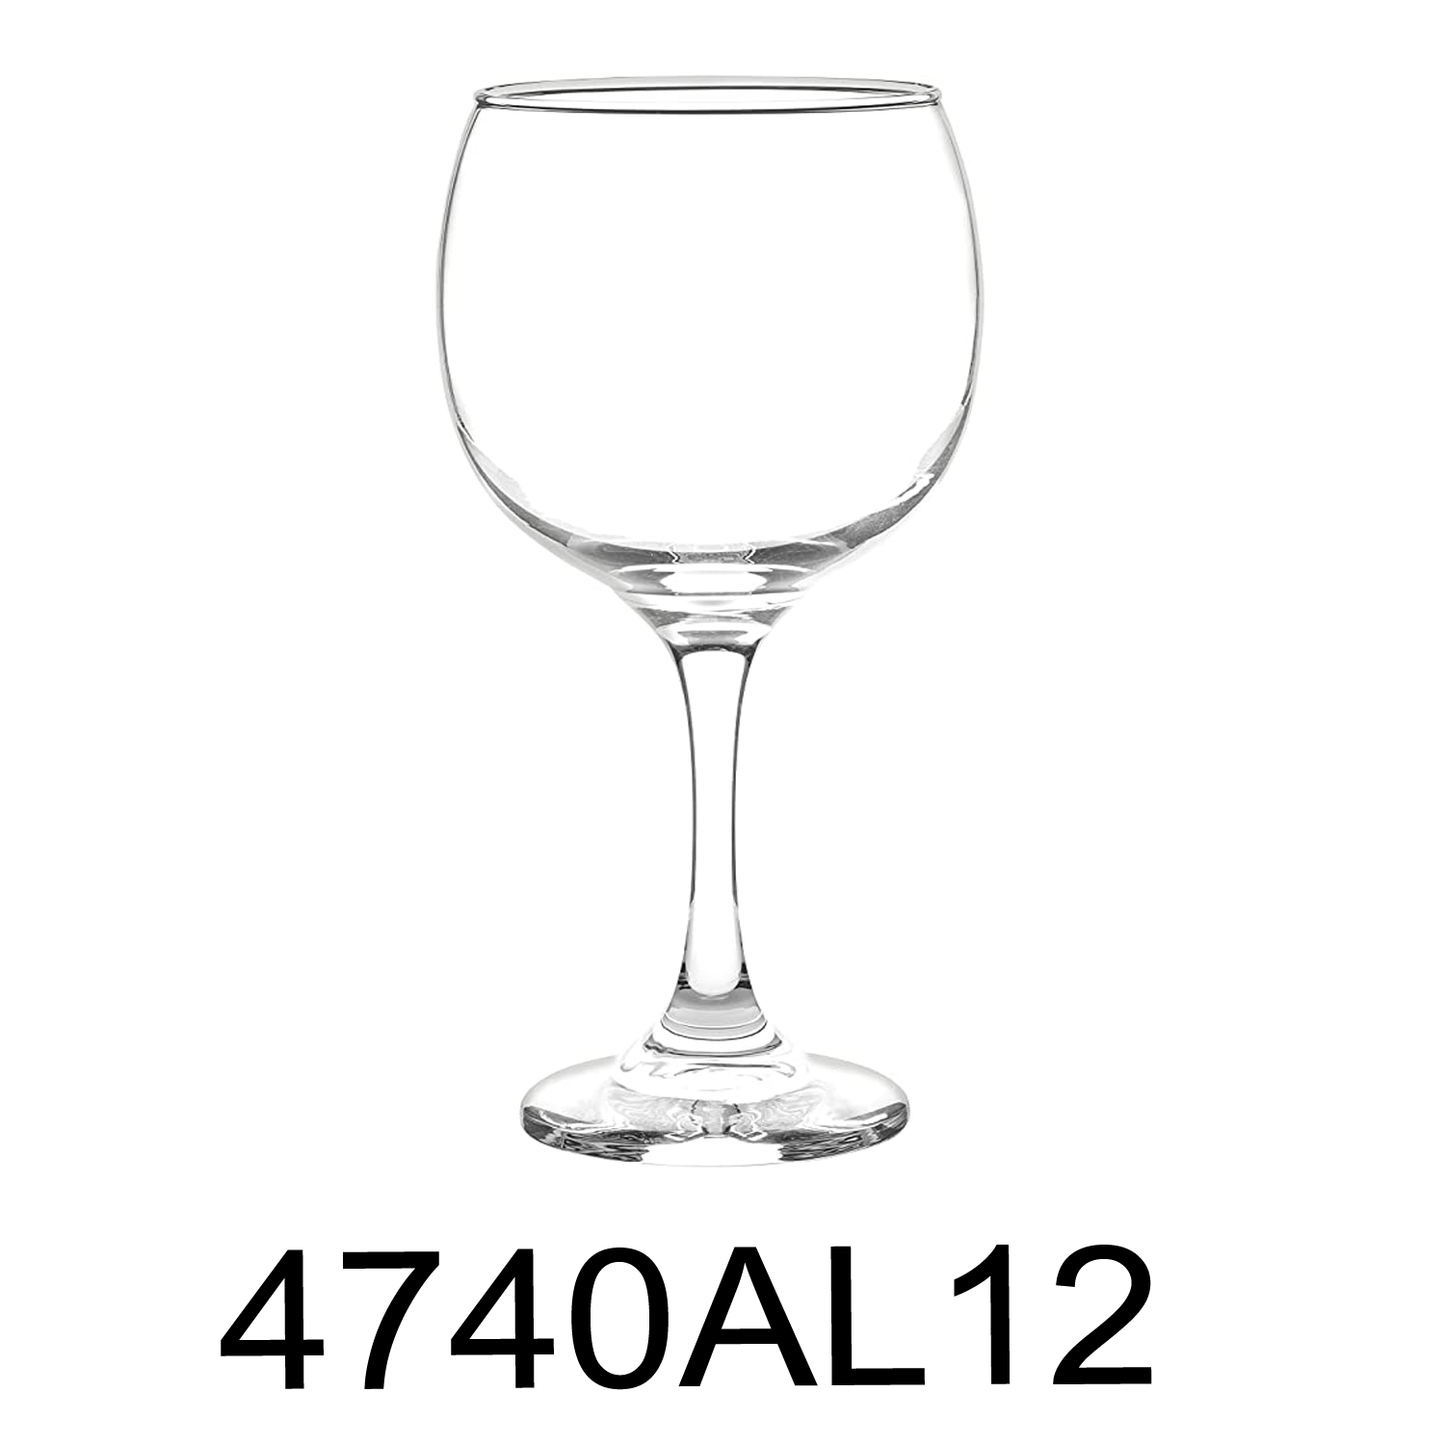 6 PC 21 Oz Cristar Premier Grand Wine Glasses